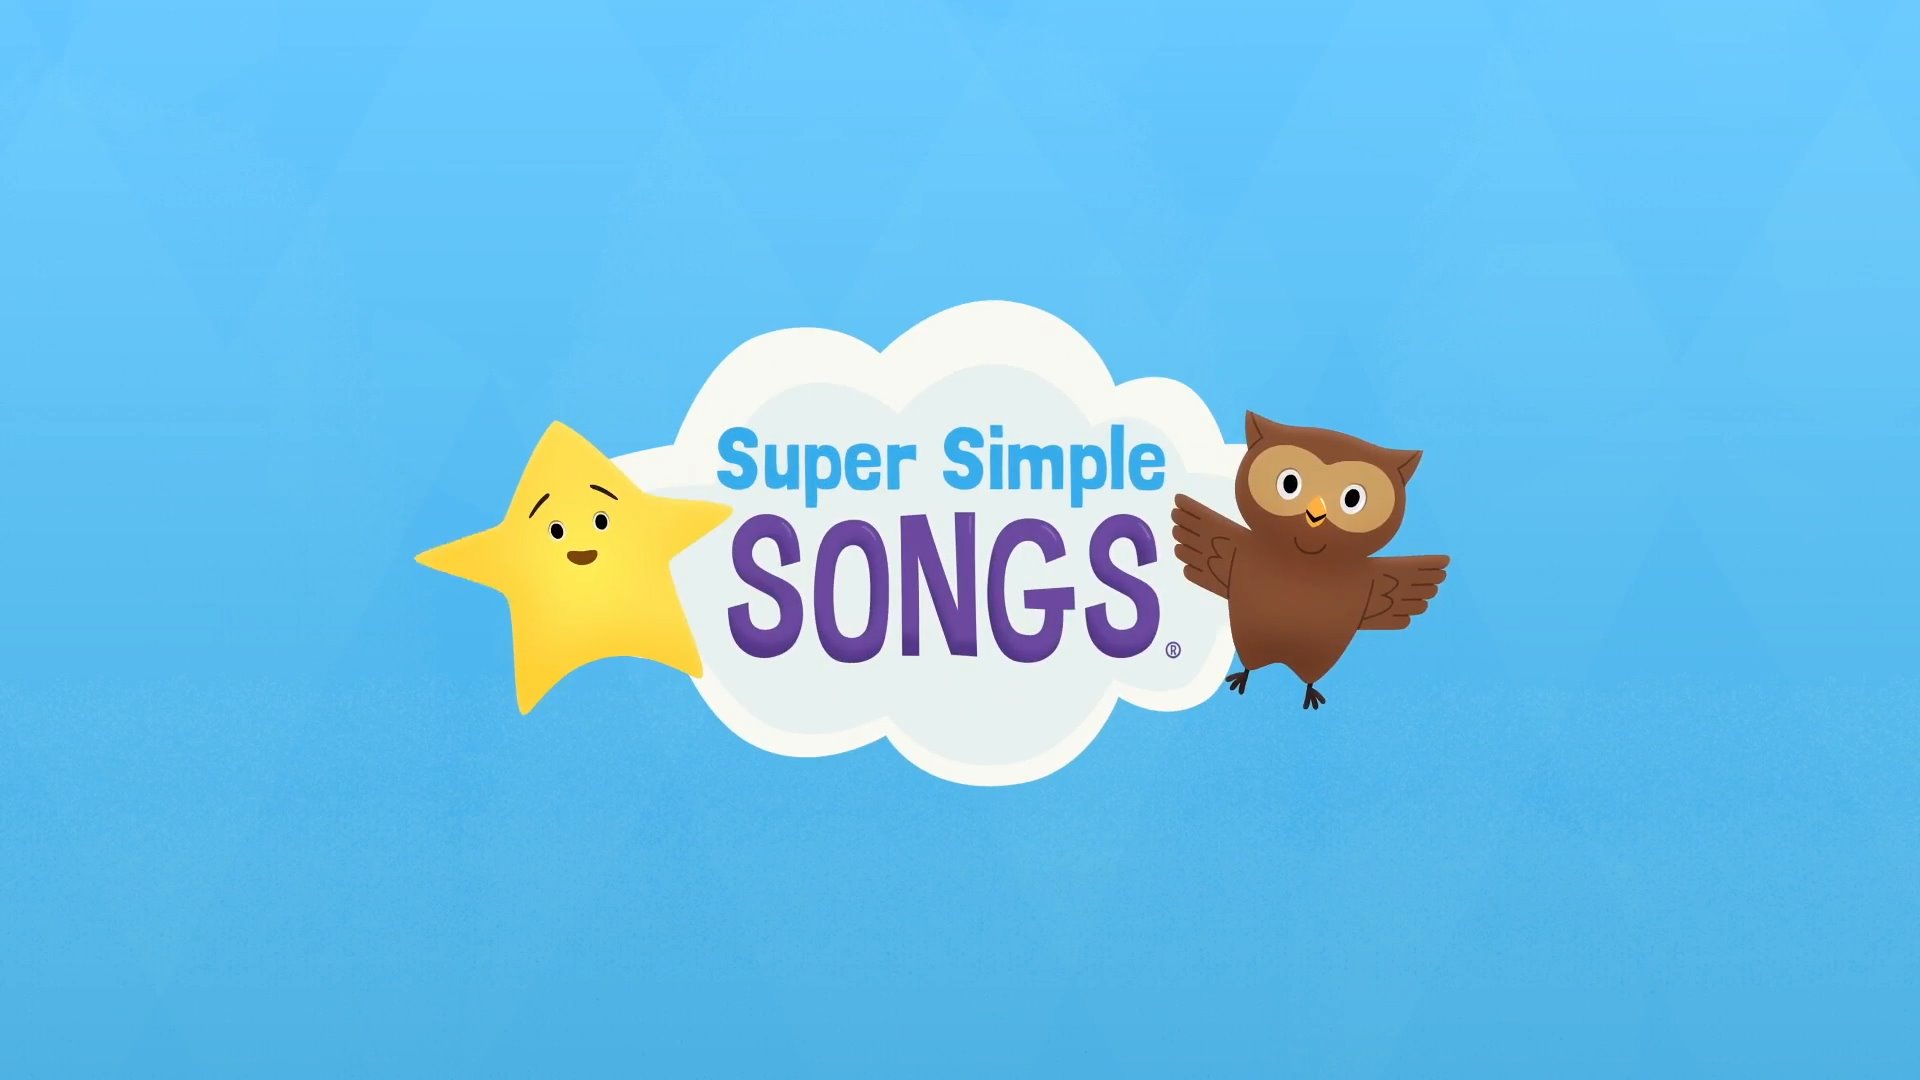 Simple song bye. Симпл Сонг. Супер Симпл Сонгс. Super simple Songs. Super simple Songs Kids Songs.